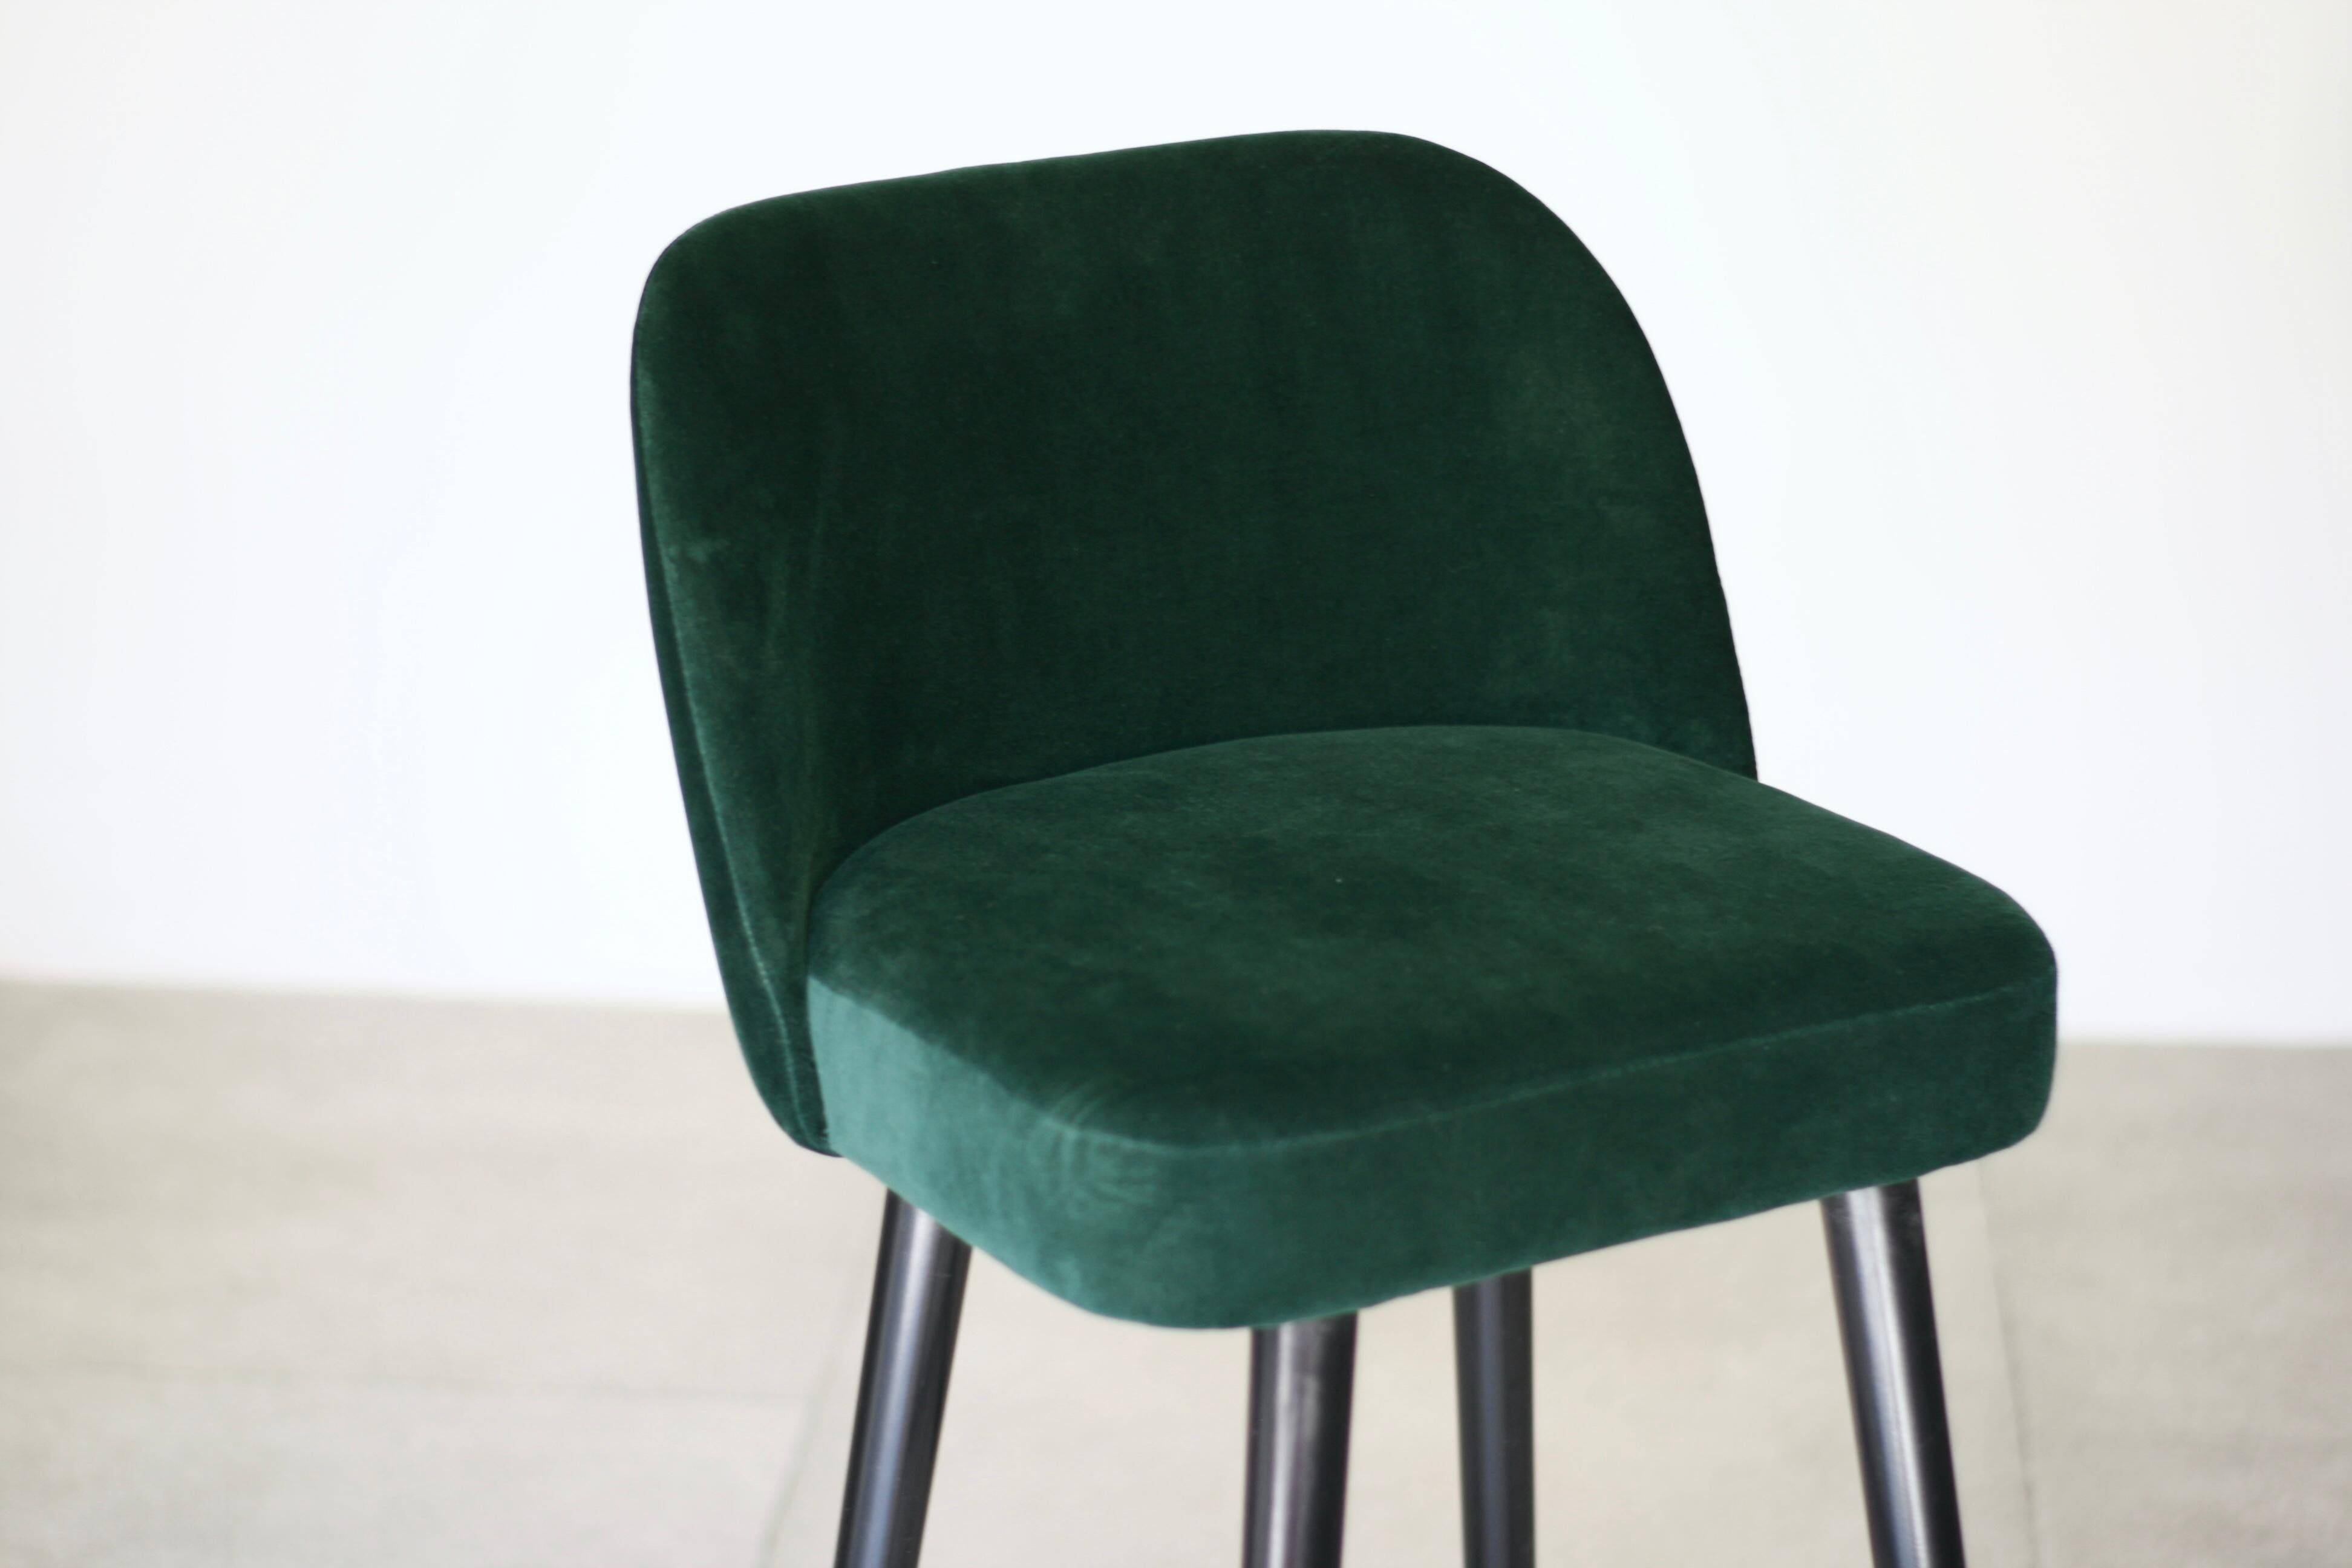 emerald green stools